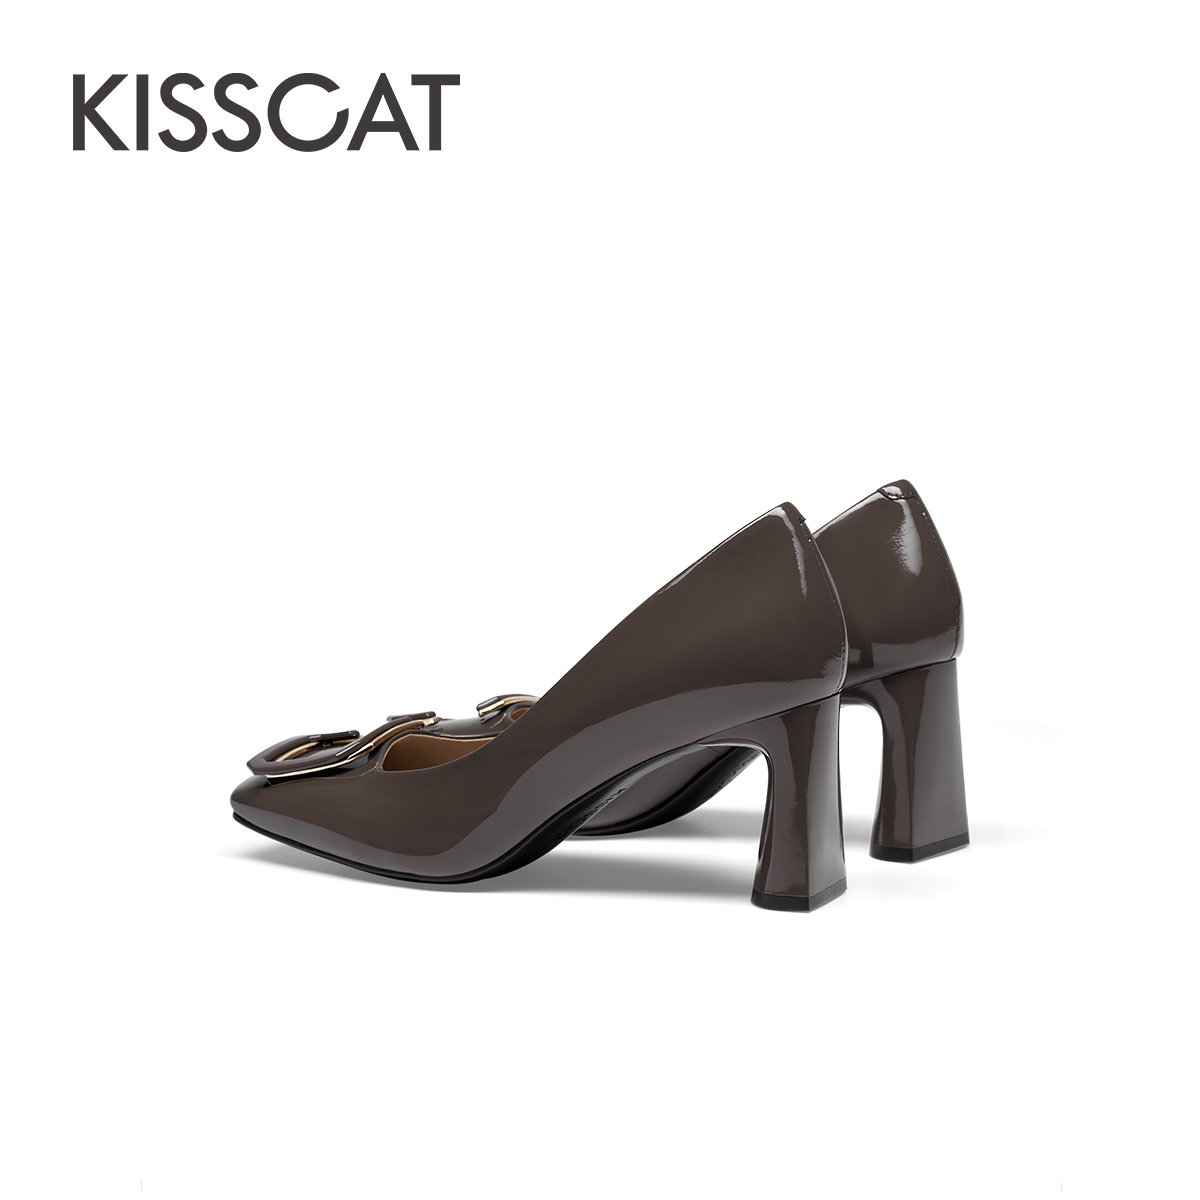 KISSCAT接吻猫春季新款方头高跟鞋通勤粗跟鞋简约时装浅口单鞋女